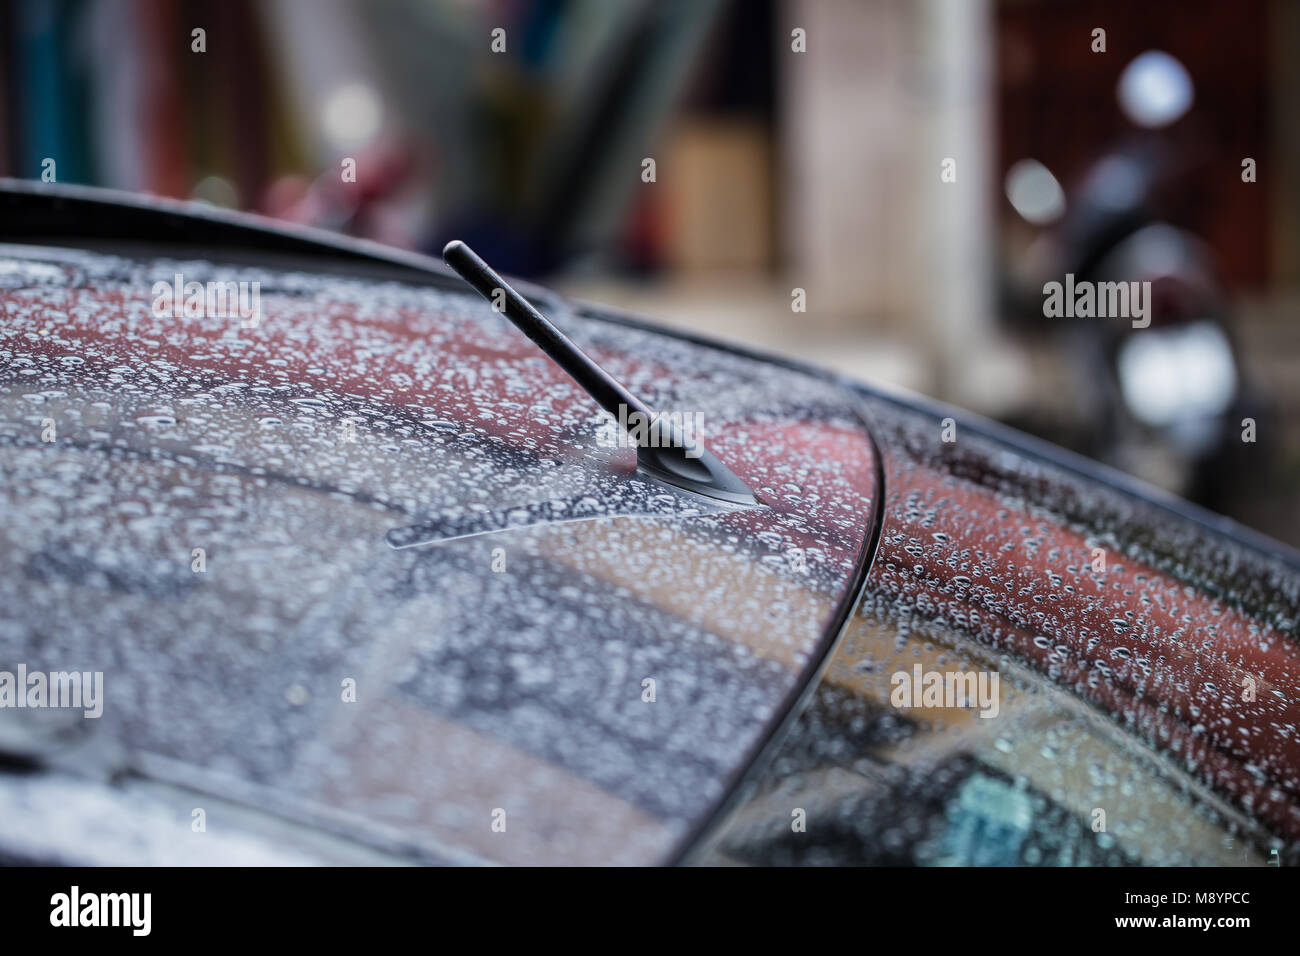 Auto radio Antenne FM-BIN in nassen Dach regnet Stockfotografie - Alamy